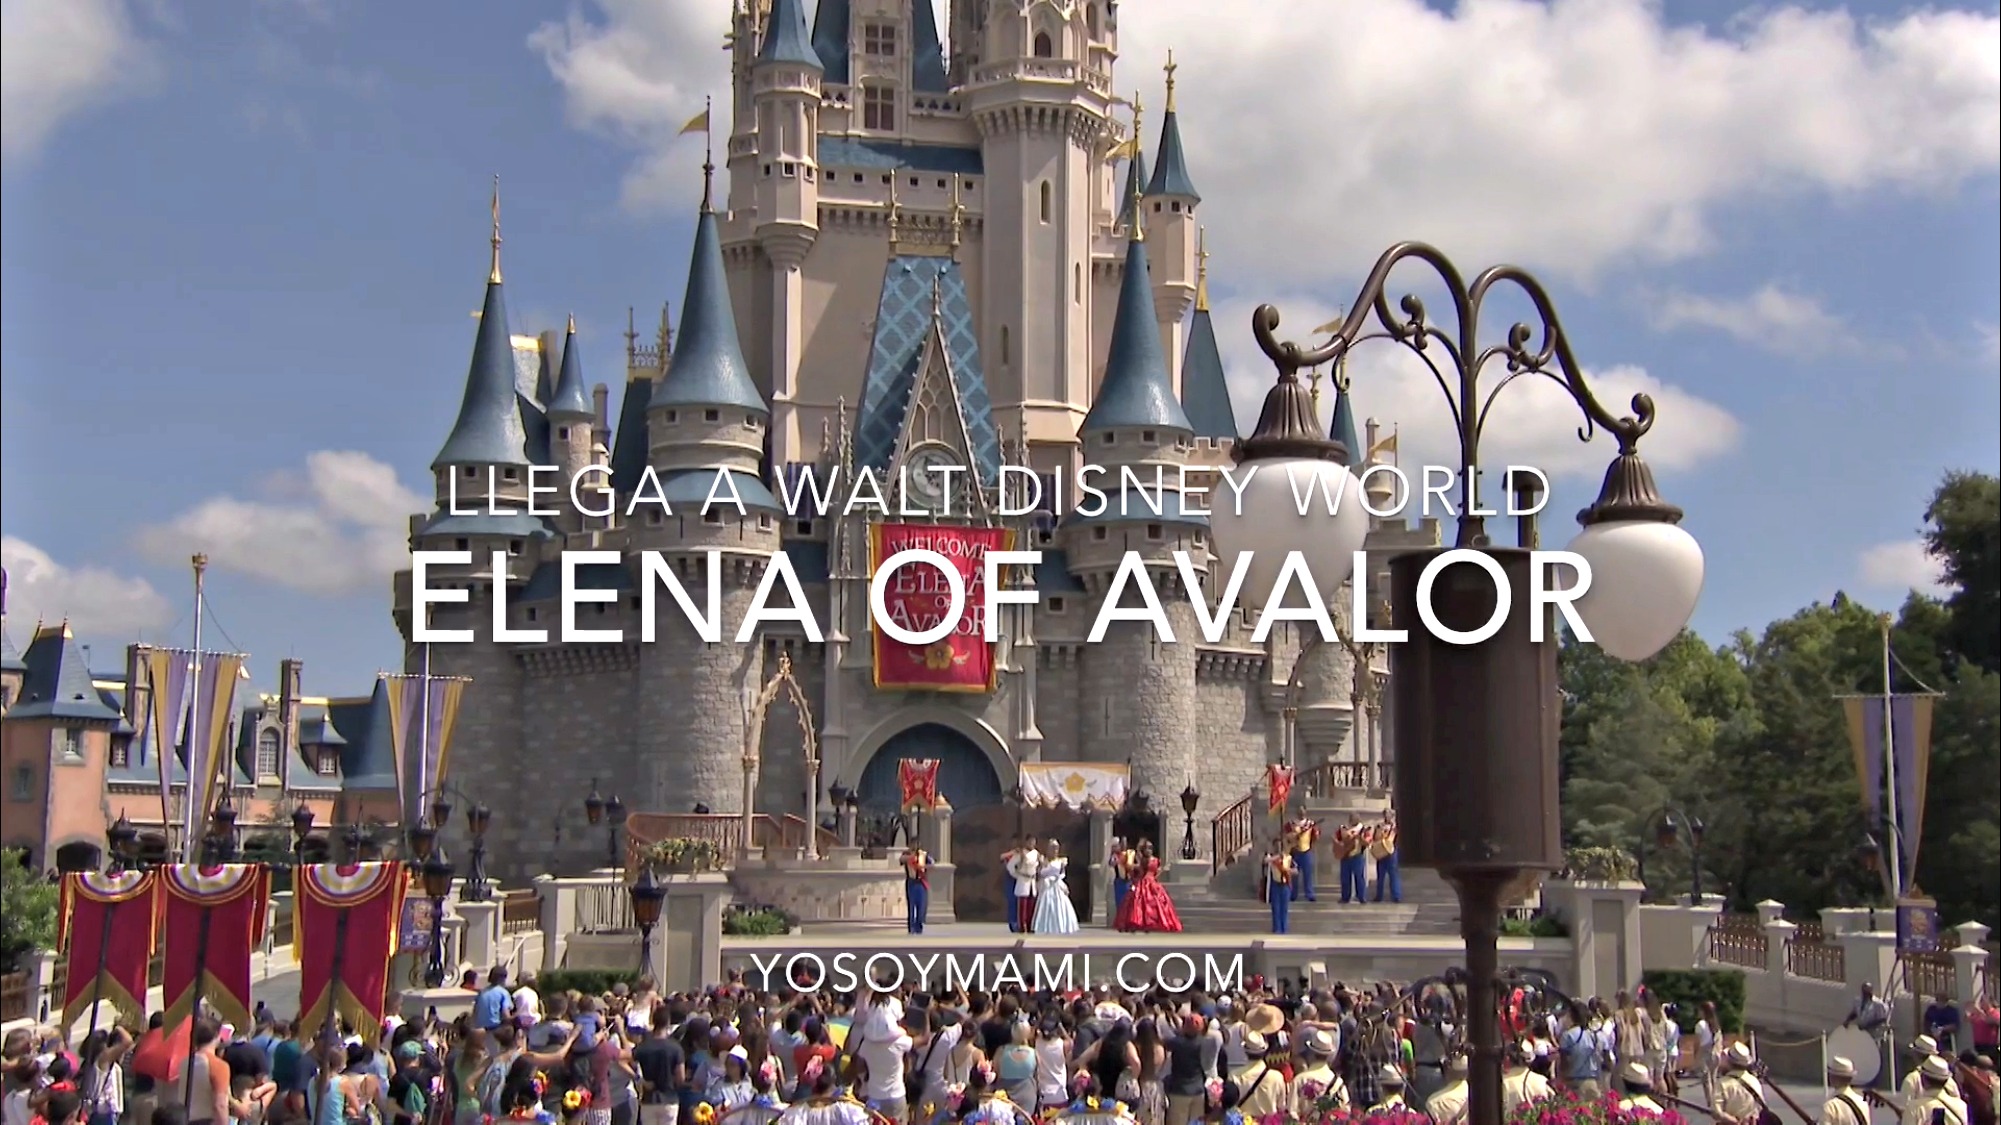 Llega la Princesa Elena of Avalor a Walt Disney World | @yosoymamipr